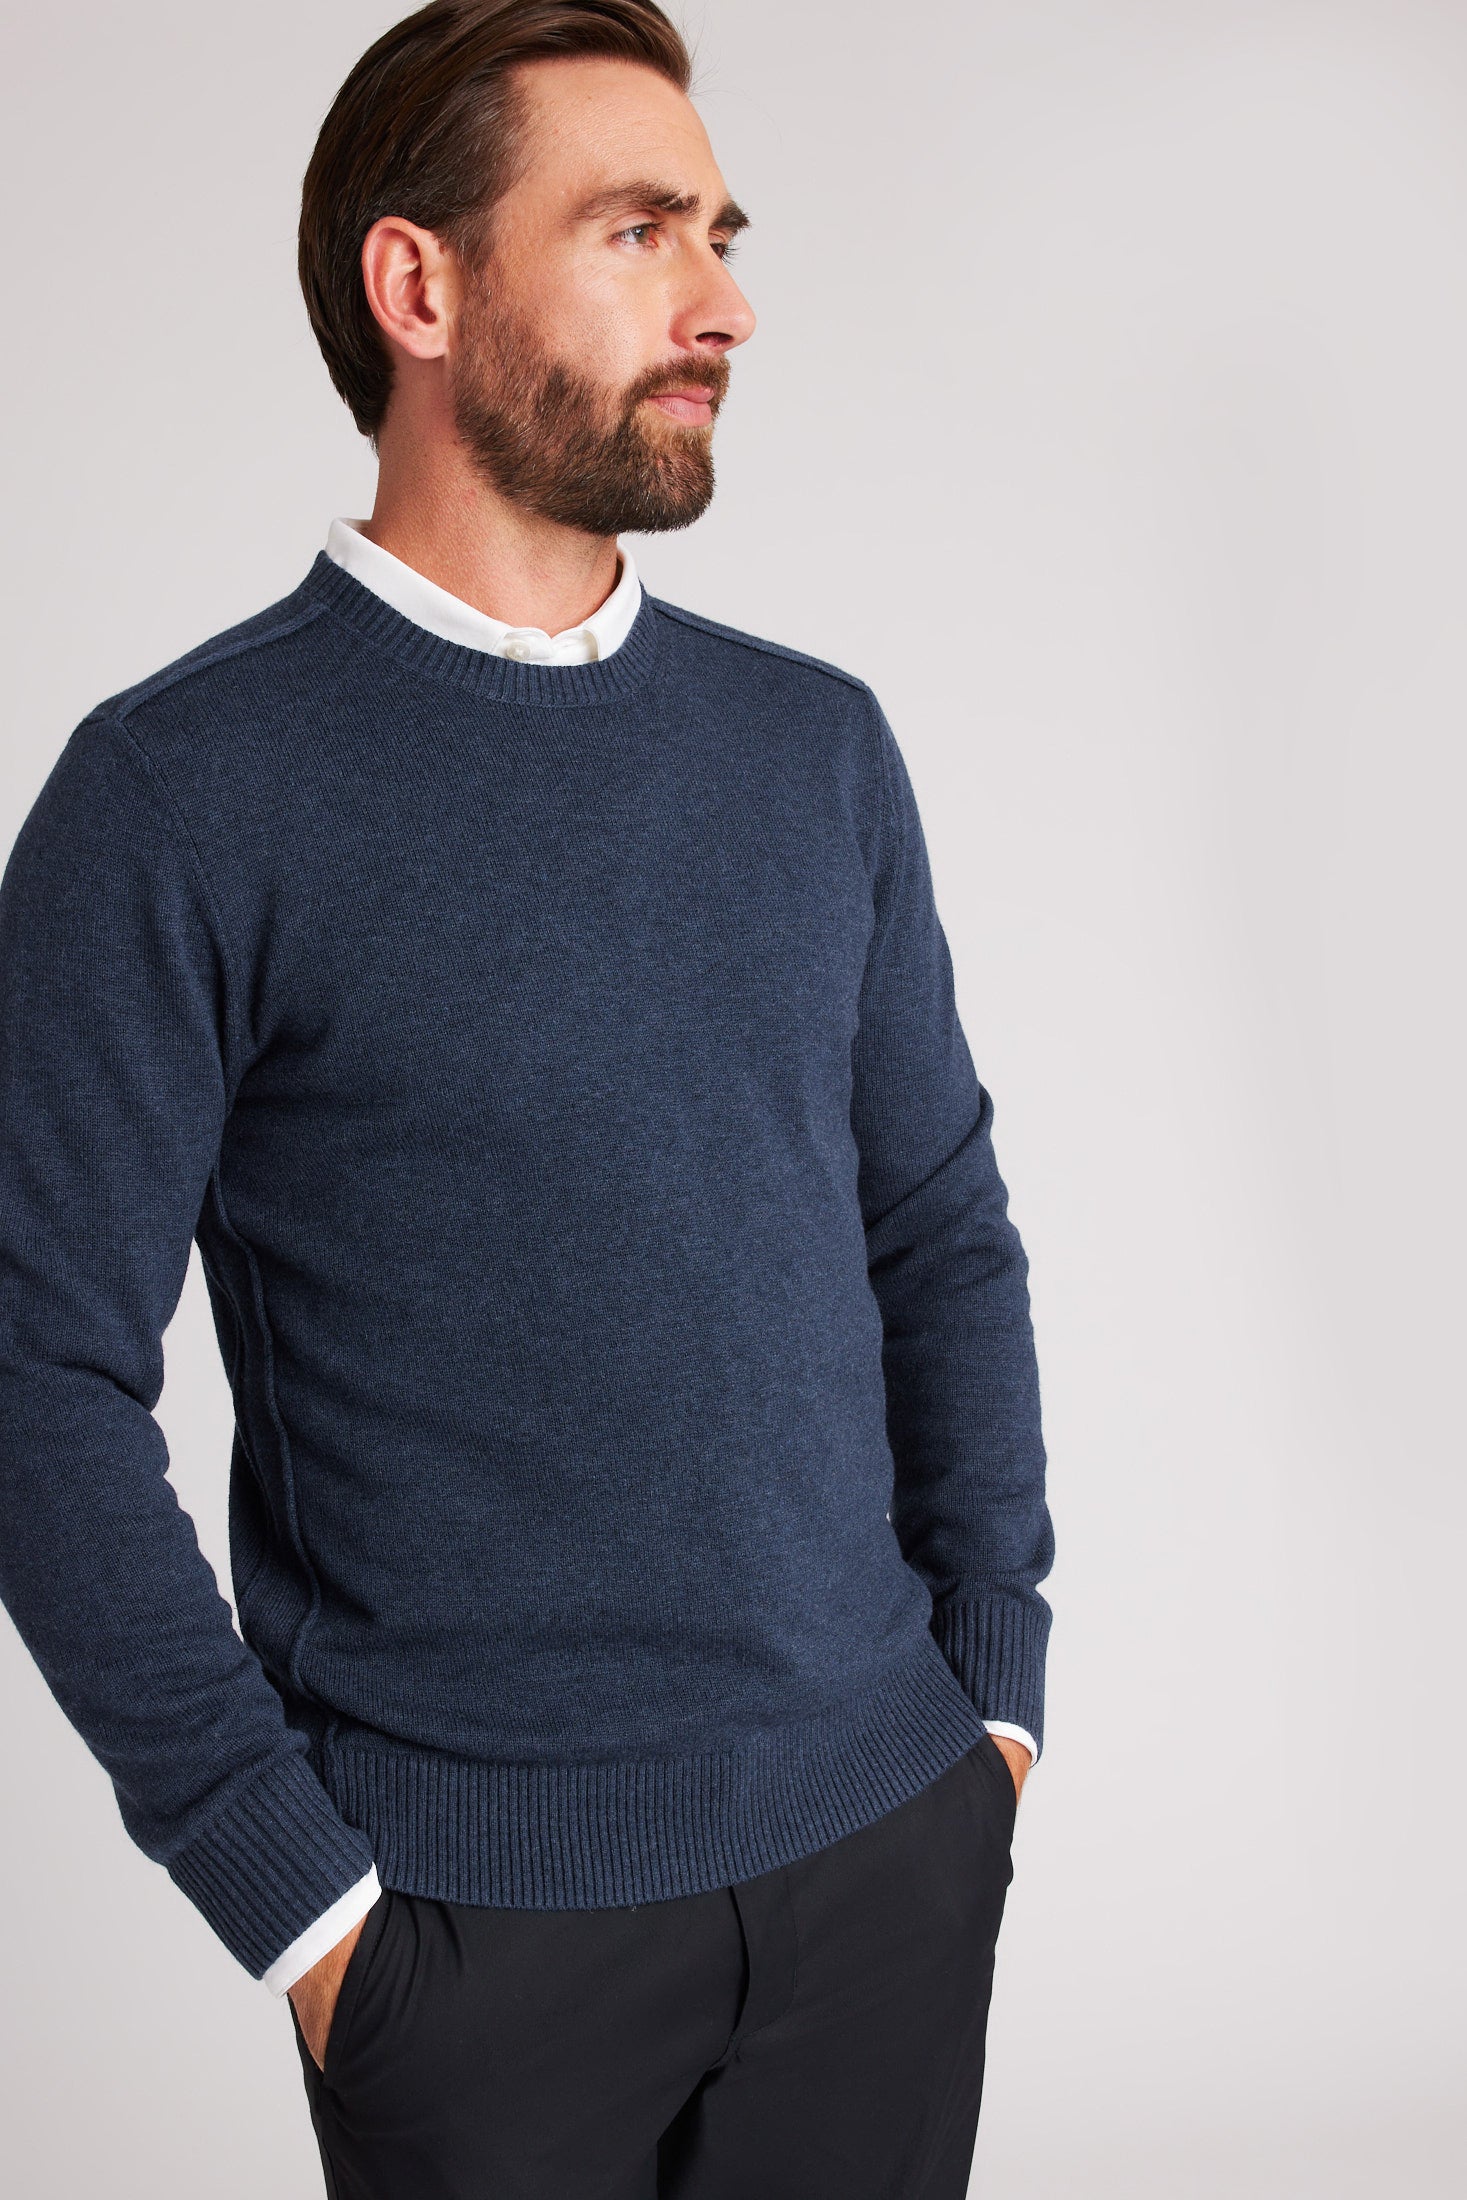 Kit and Ace — Uplift Merino Sweater